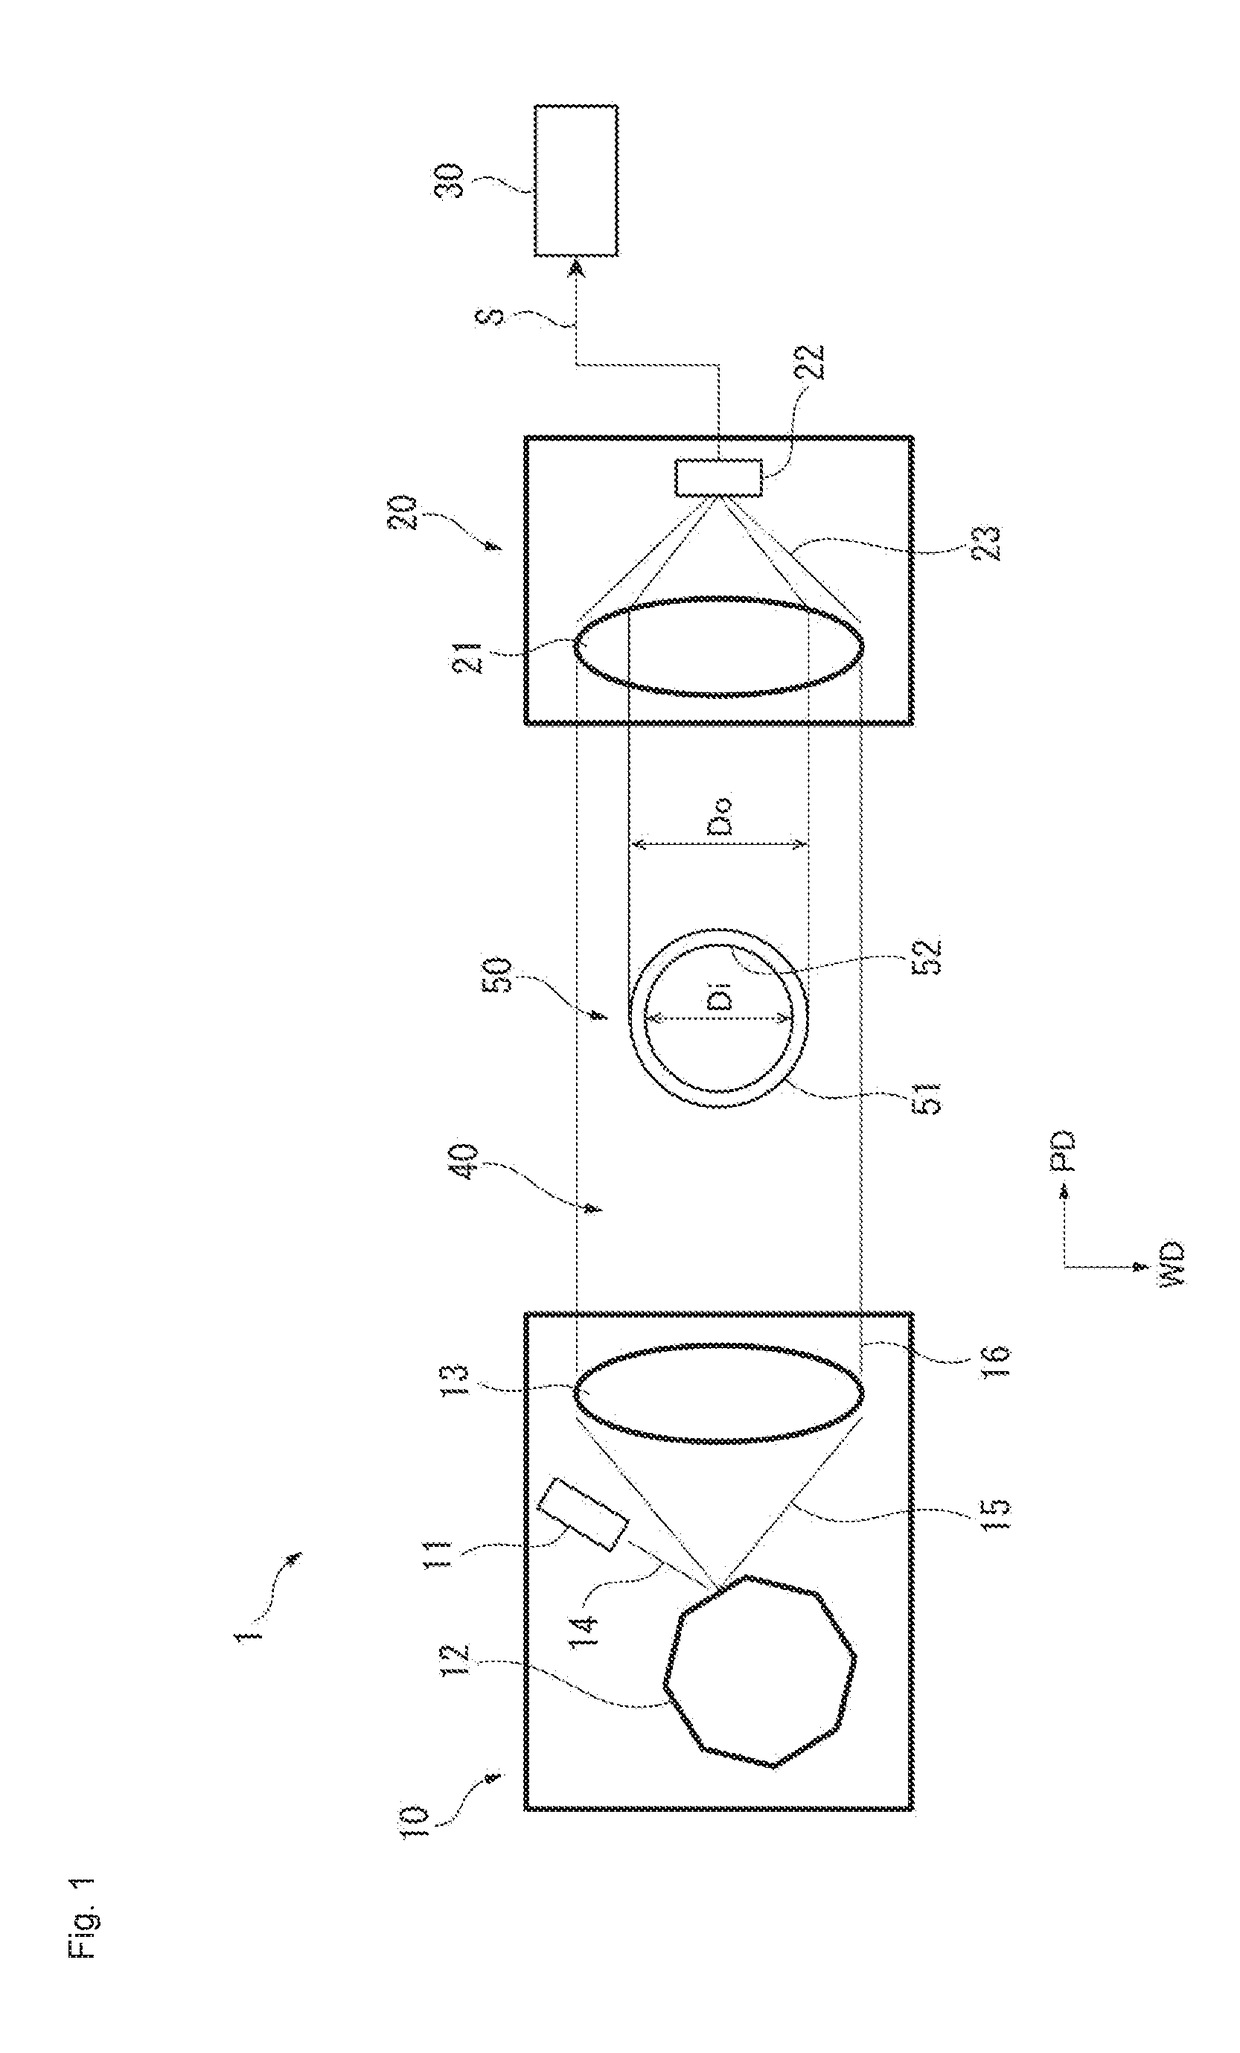 Internal diameter measuring method for transparent tube